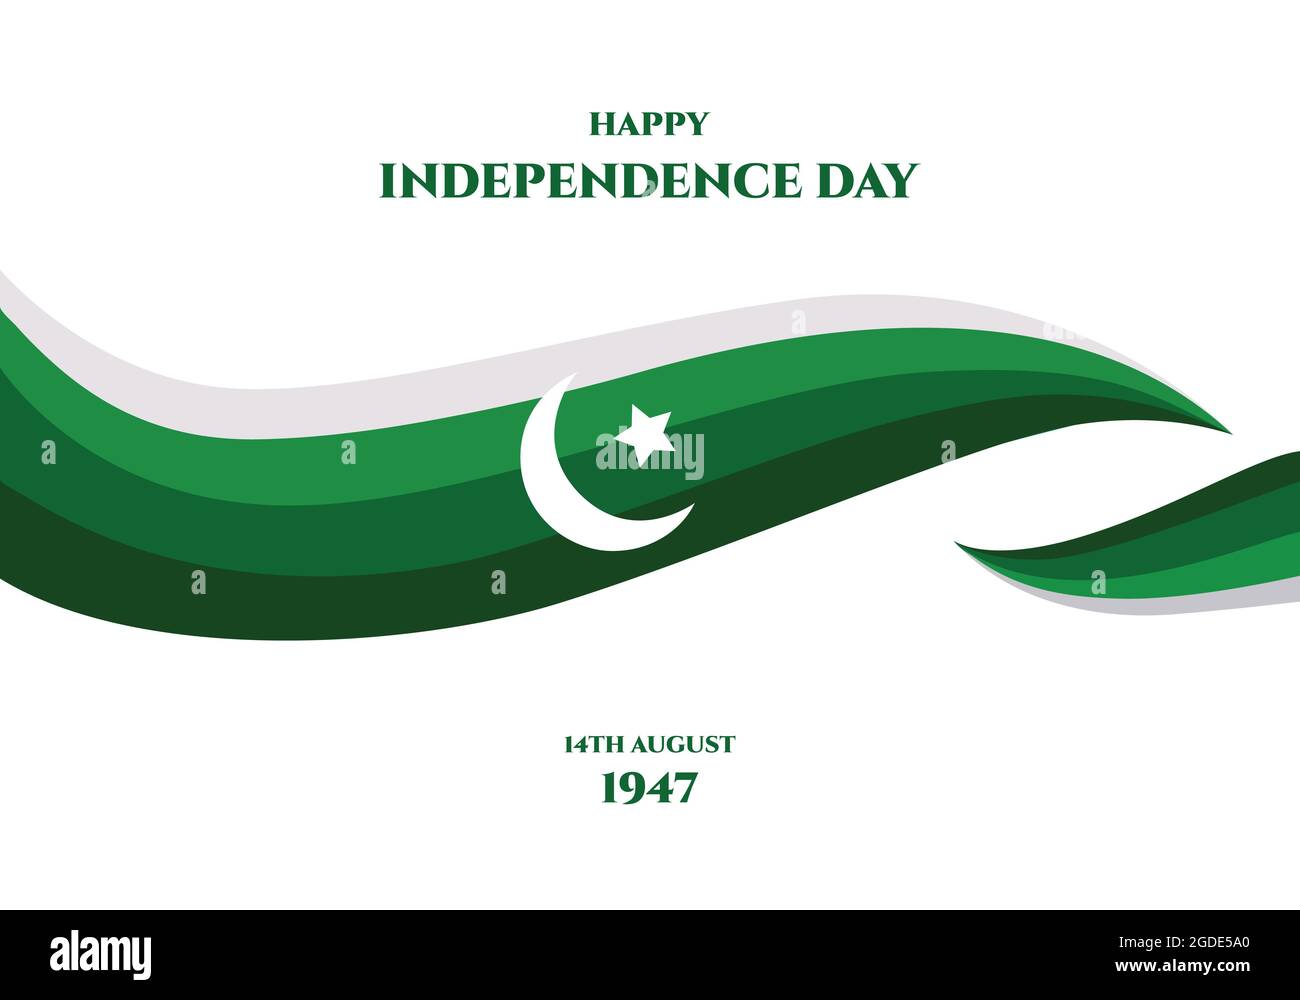 Unabhängigkeitstag Pakistans kreatives Banner oder Plakat mit Hintergrund der Nationalflagge. August 14 1947. Islamisches Land. Stock Vektor